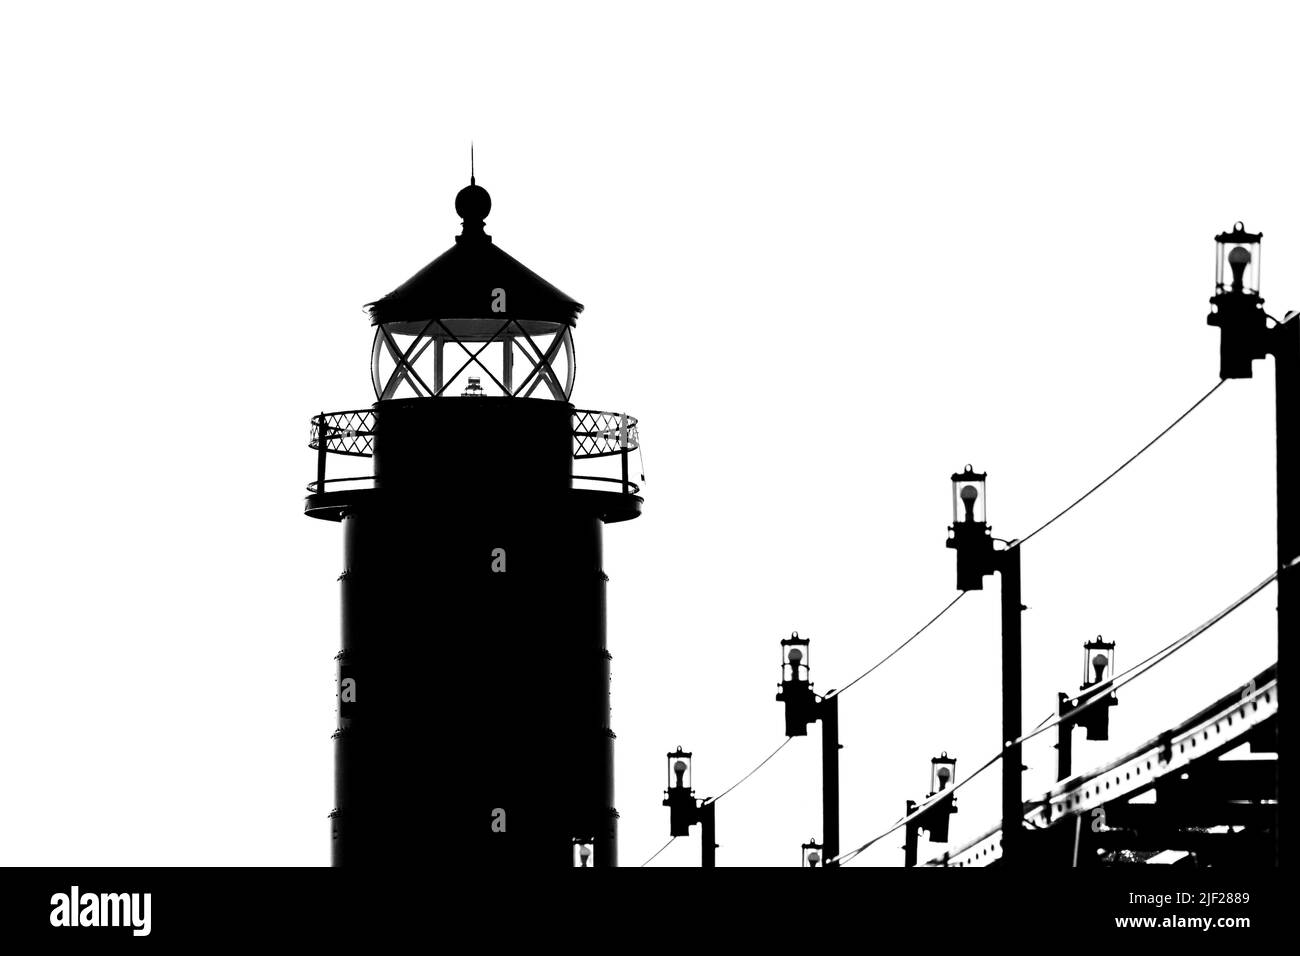 Le phare et la passerelle de Grand Haven. Michigan, sont montrés dans une silhouette noire et blanche Banque D'Images